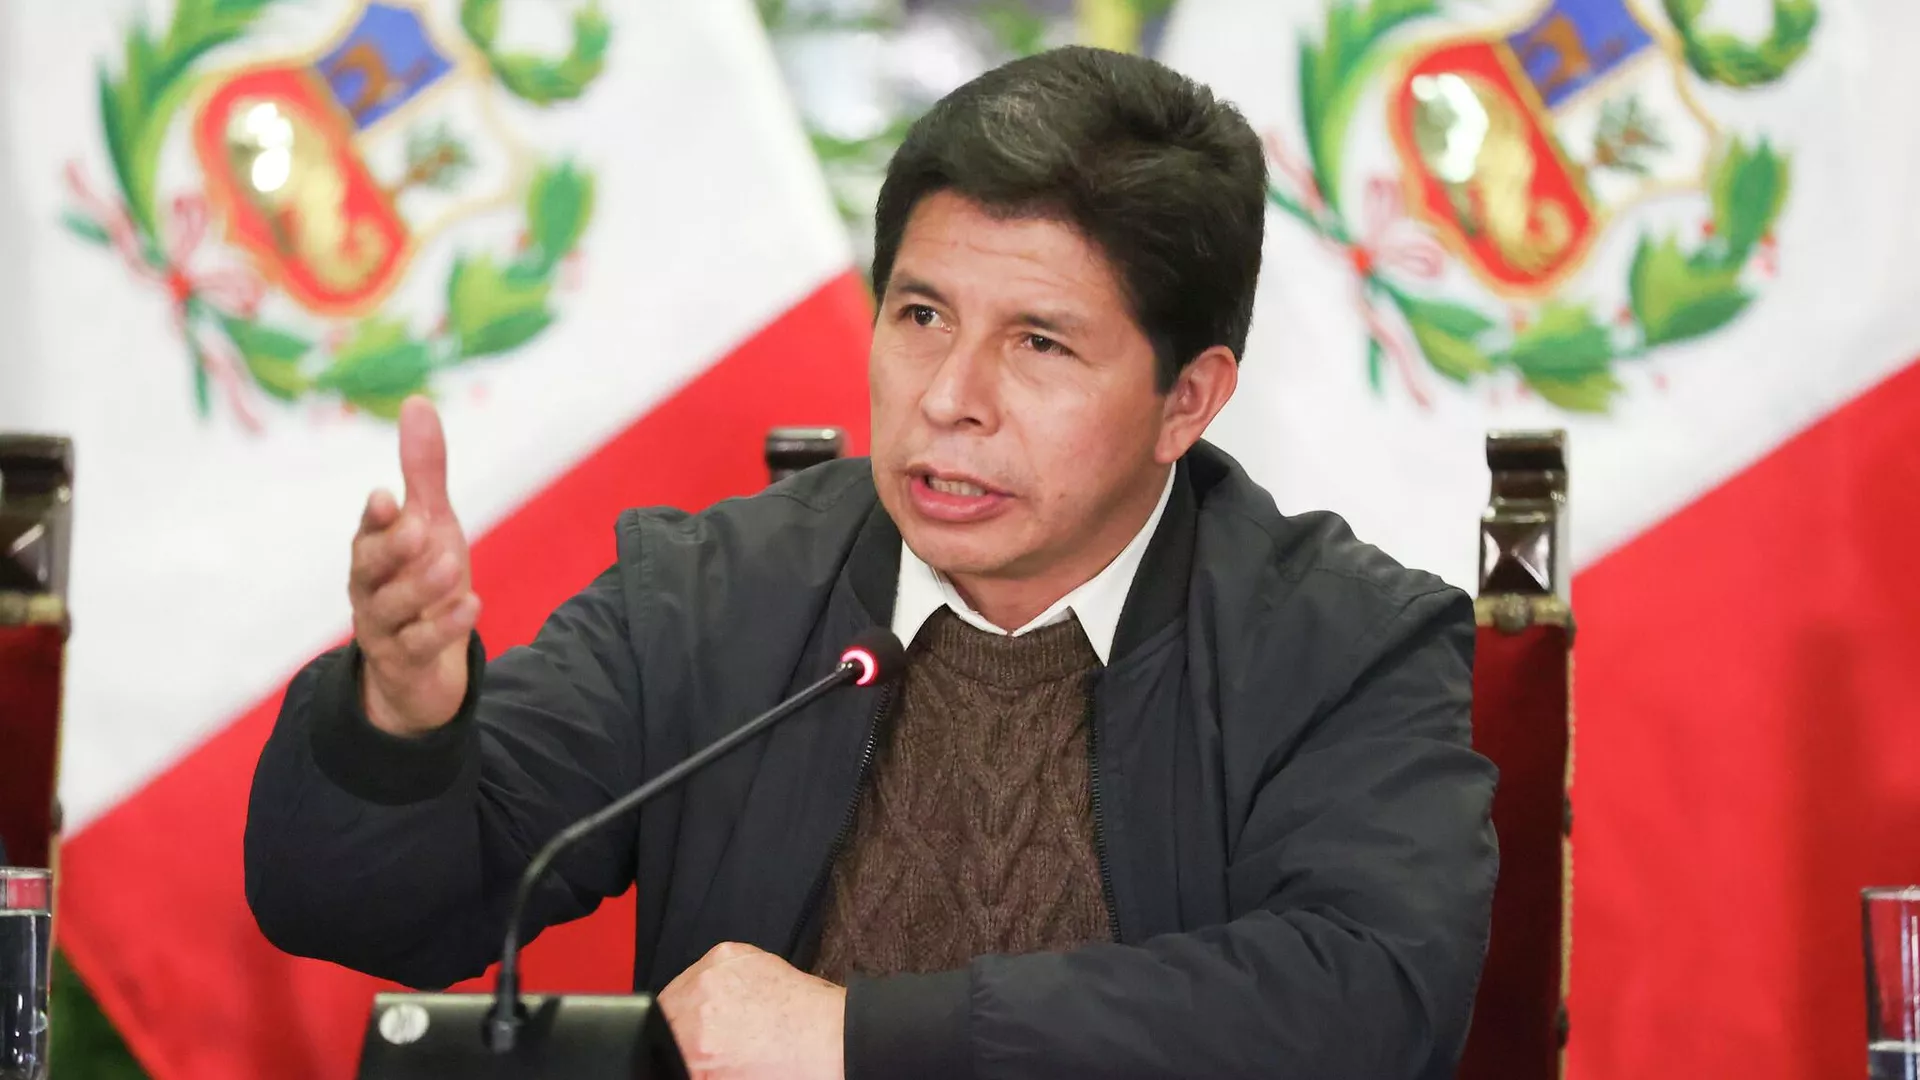  El ministro de Justicia de Perú advierte que el Ejecutivo no aceptará la destitución de Castillo